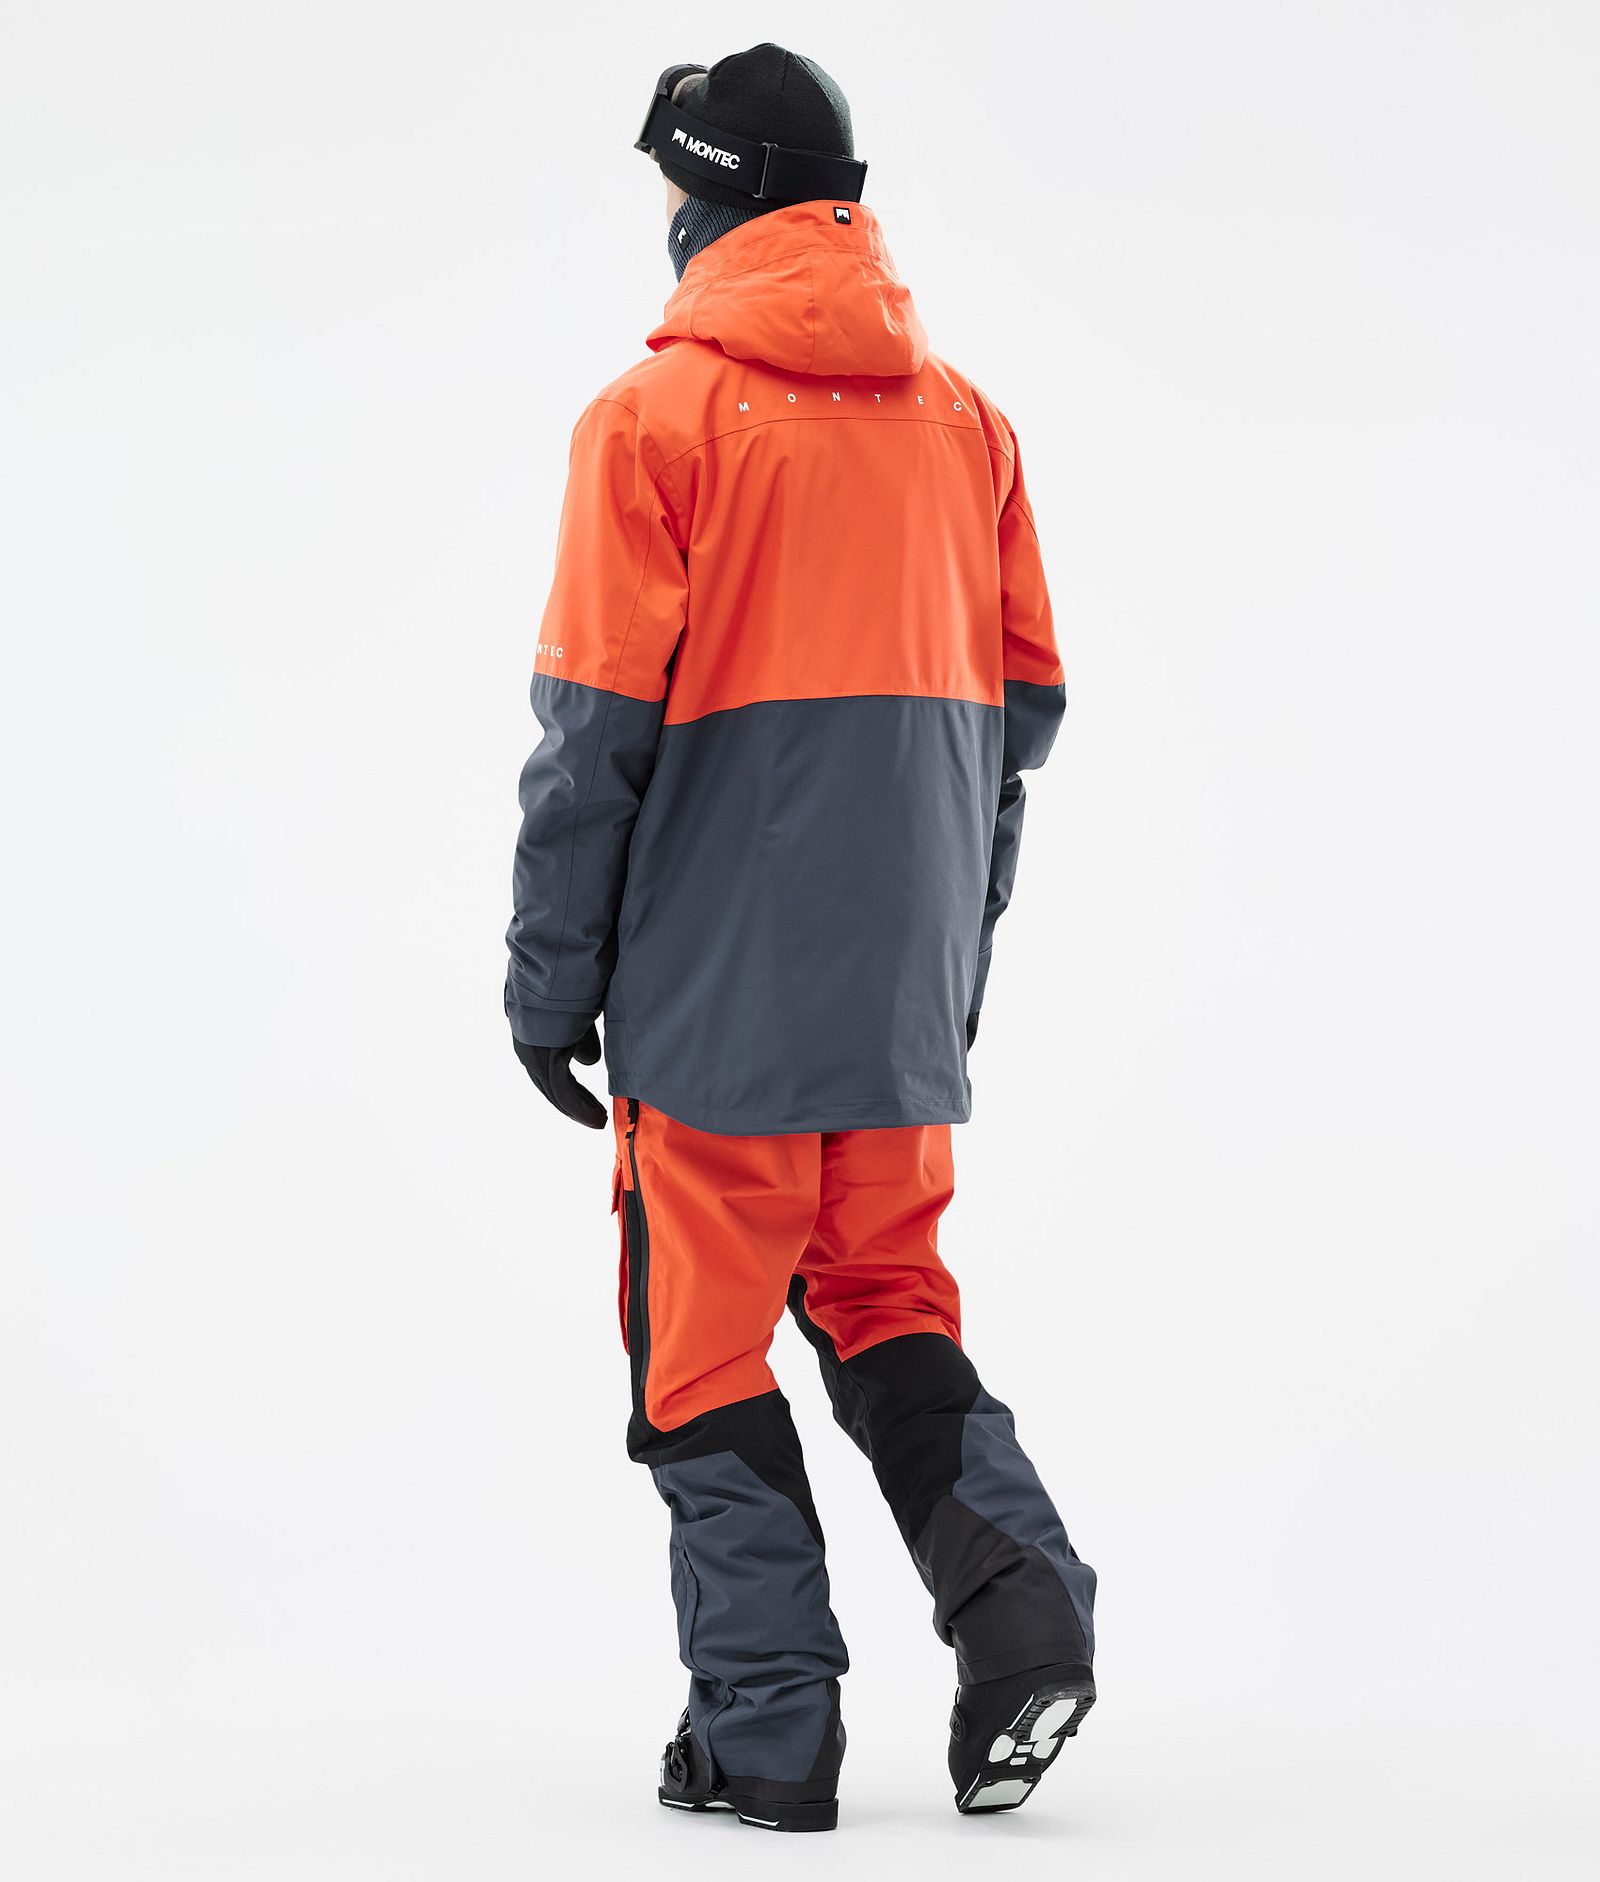 Dune Ski Jacket Men Orange/Black/Metal Blue, Image 5 of 9